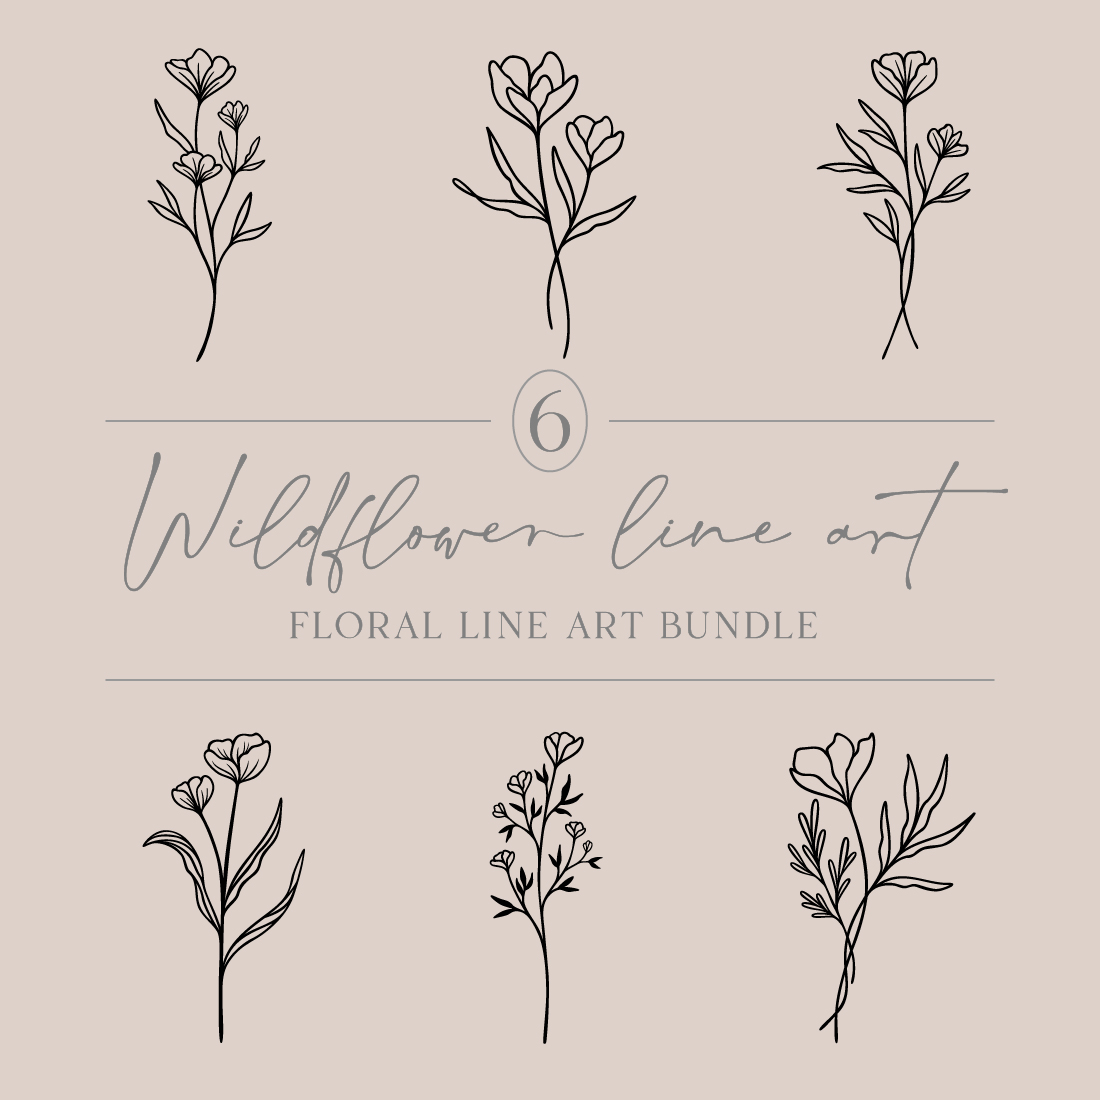 Flower Line Art Bundle | 6 Elegant Wildflowers | Botanical Floral Vector Illustration Set | Leafy Garden Plant Designs cover image.